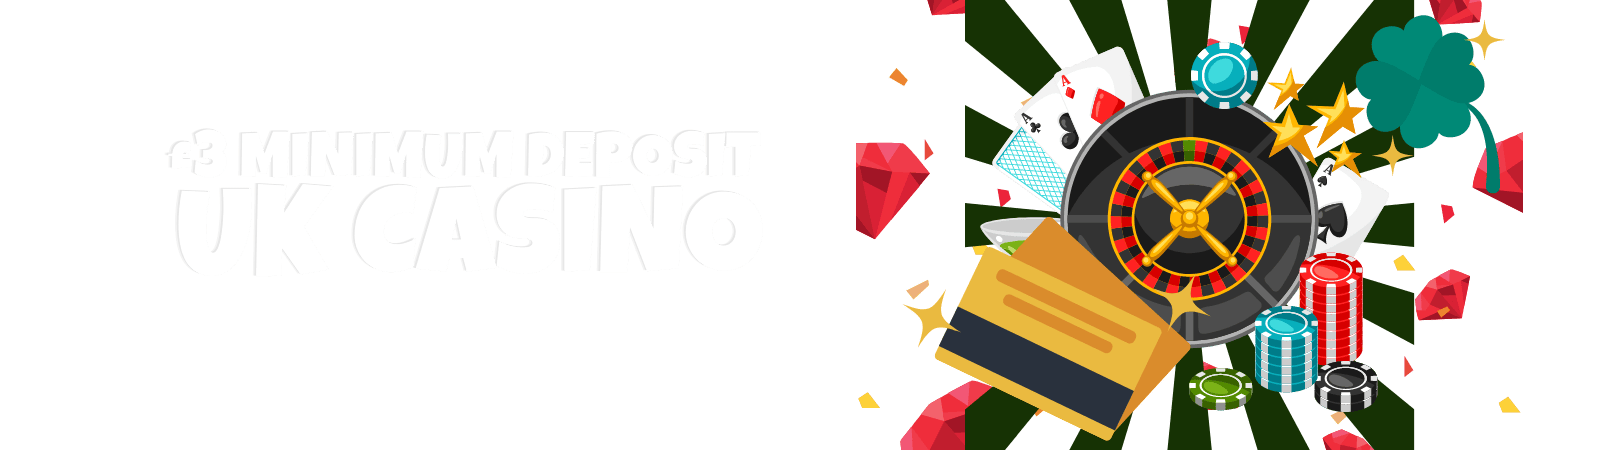 What Is £3 Minimum Deposit UK Casino img